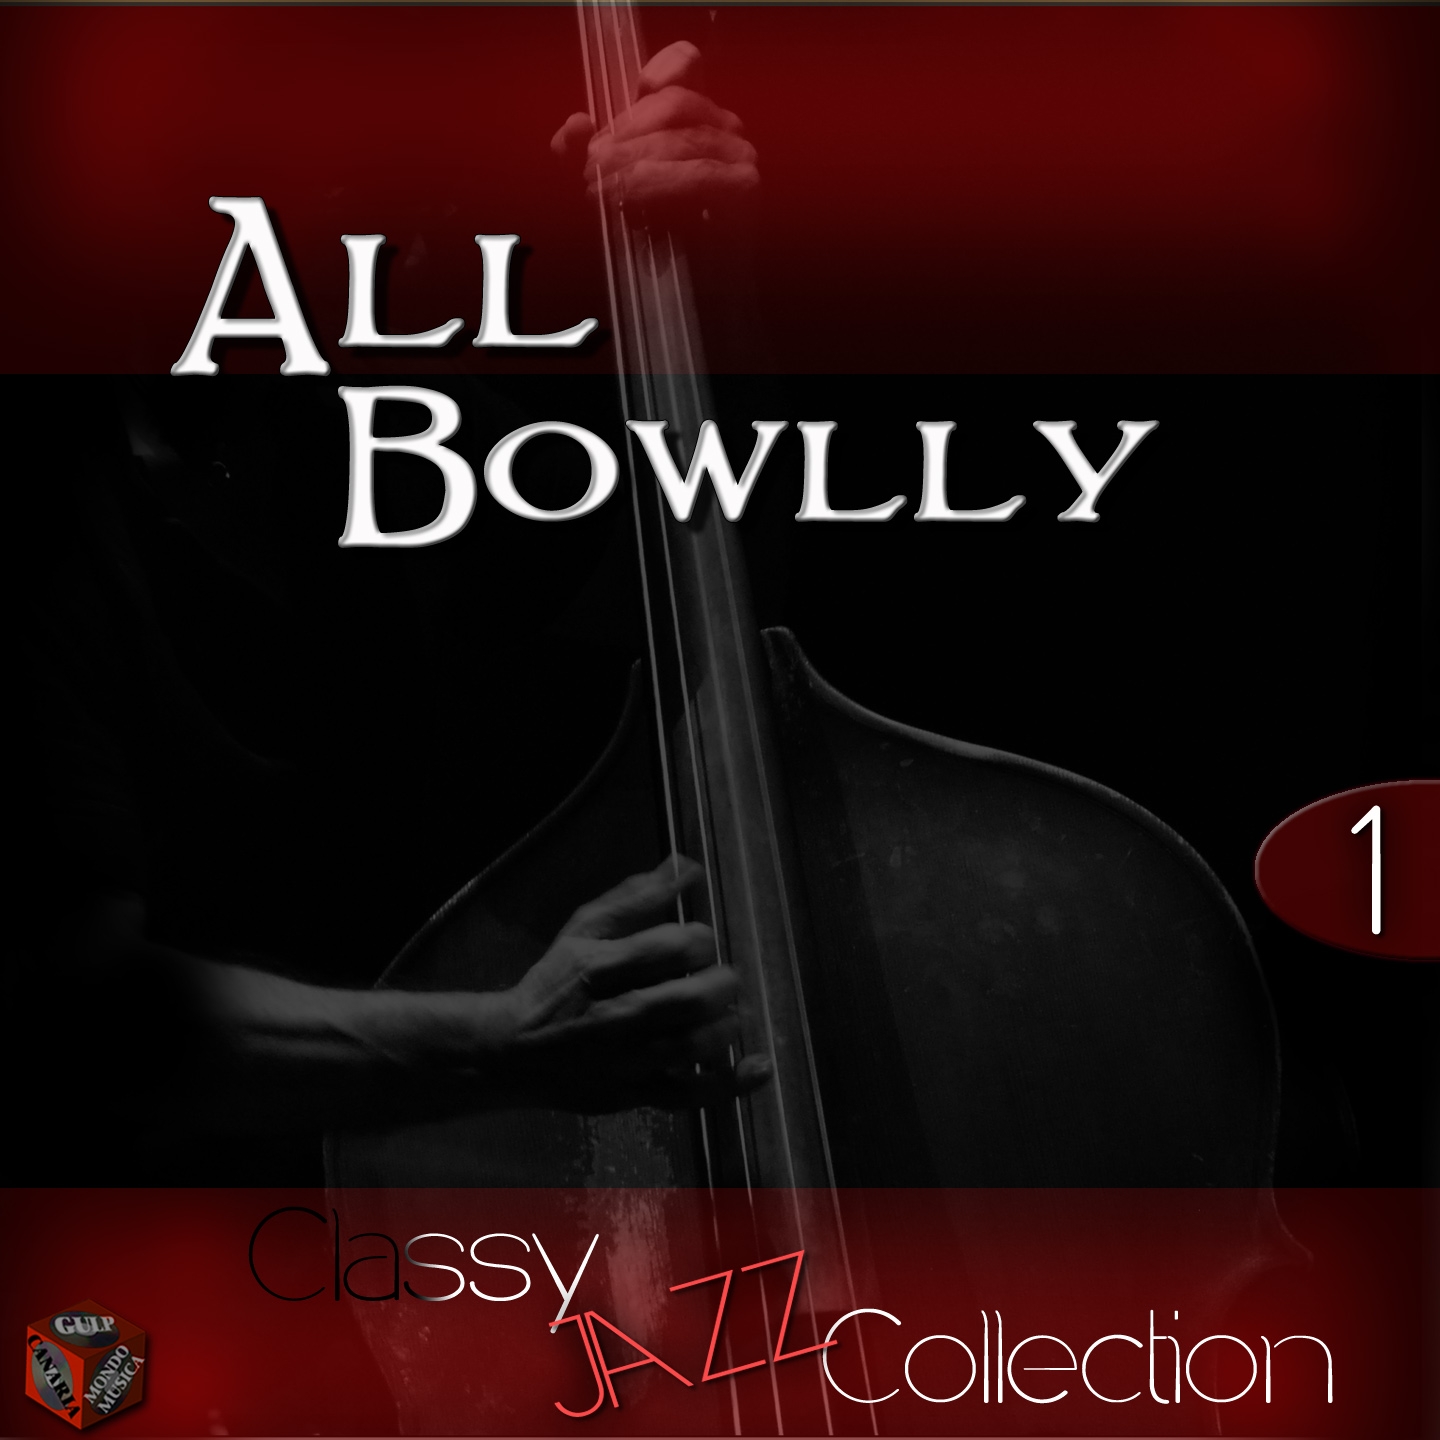 Classy Jazz Collection: Al Bowlly, Vol. 1